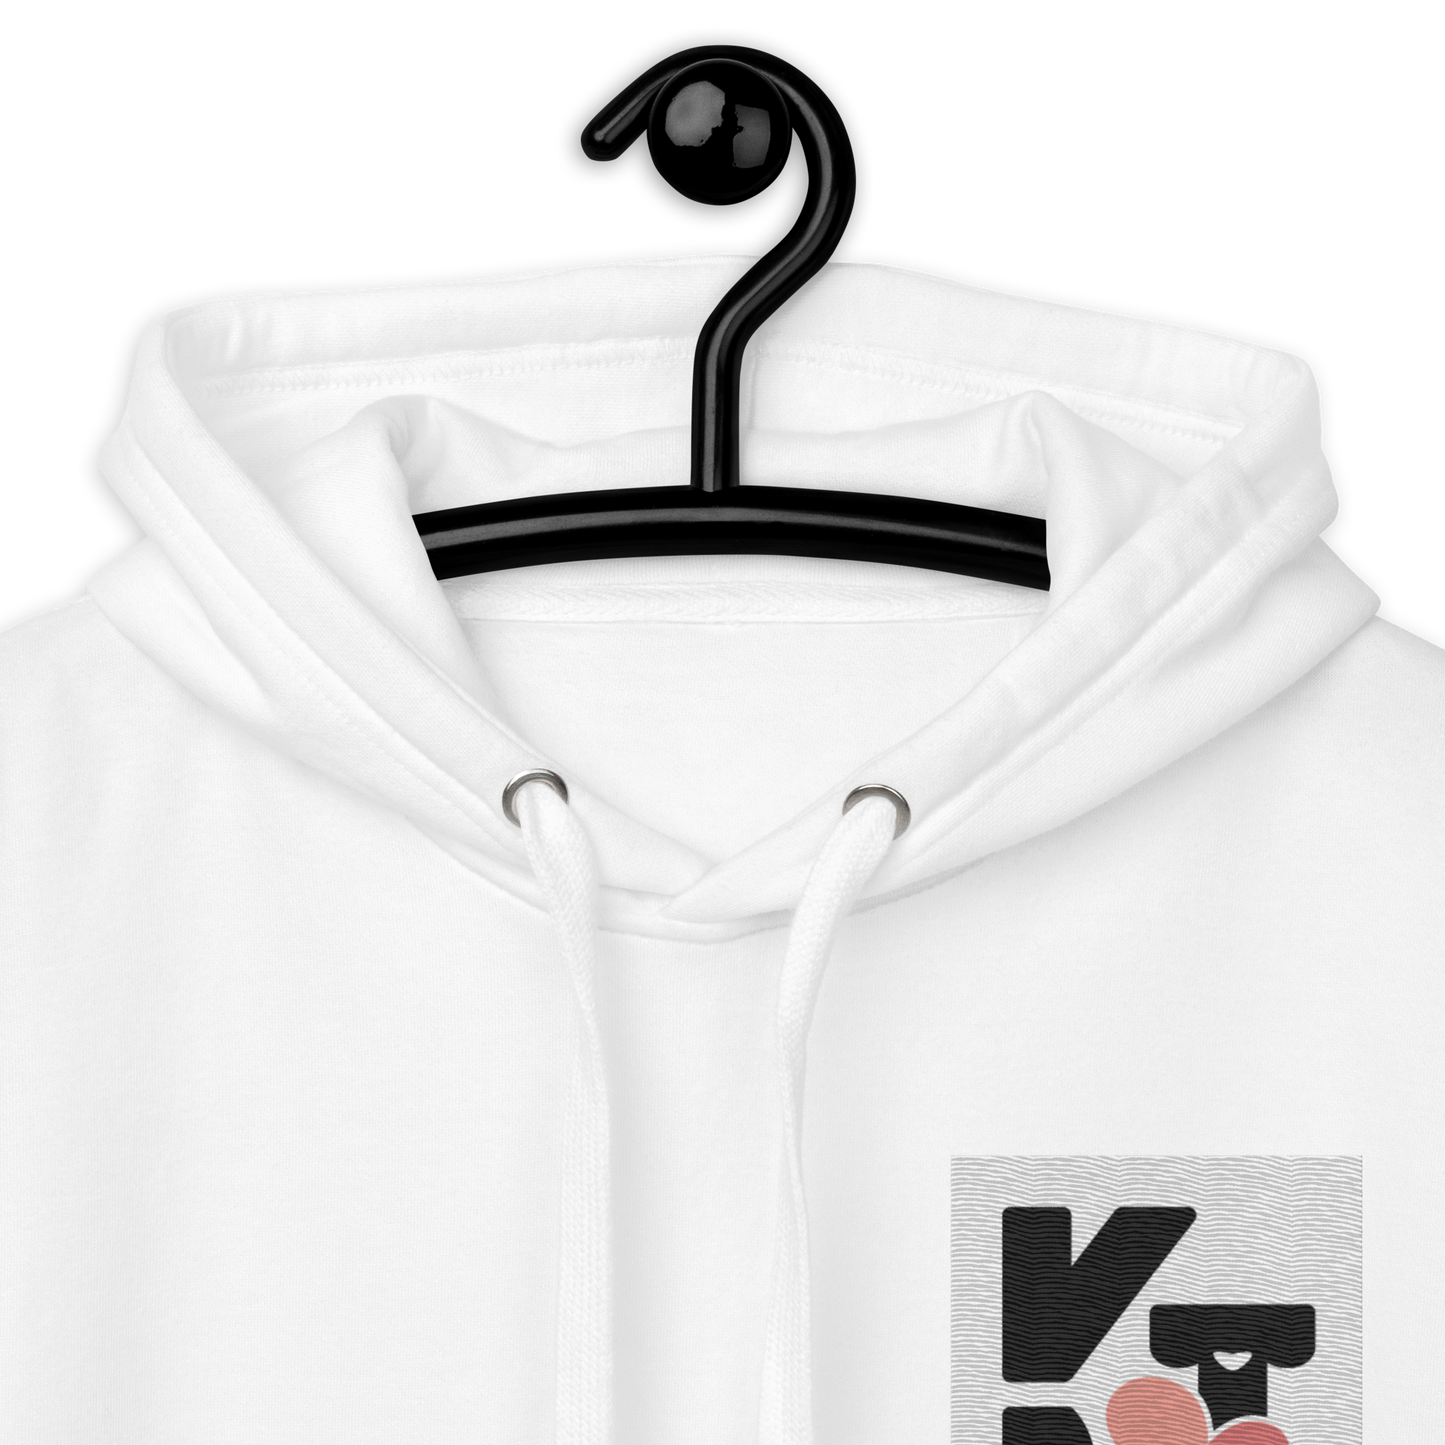 Weißer Unisex-Kapuzenpullover "Wip Wip Hurra" von Klexgetier, an einem Kleiderbügel aufgehängt. Das Produkt ist auf schwarzem Hintergrund platziert.